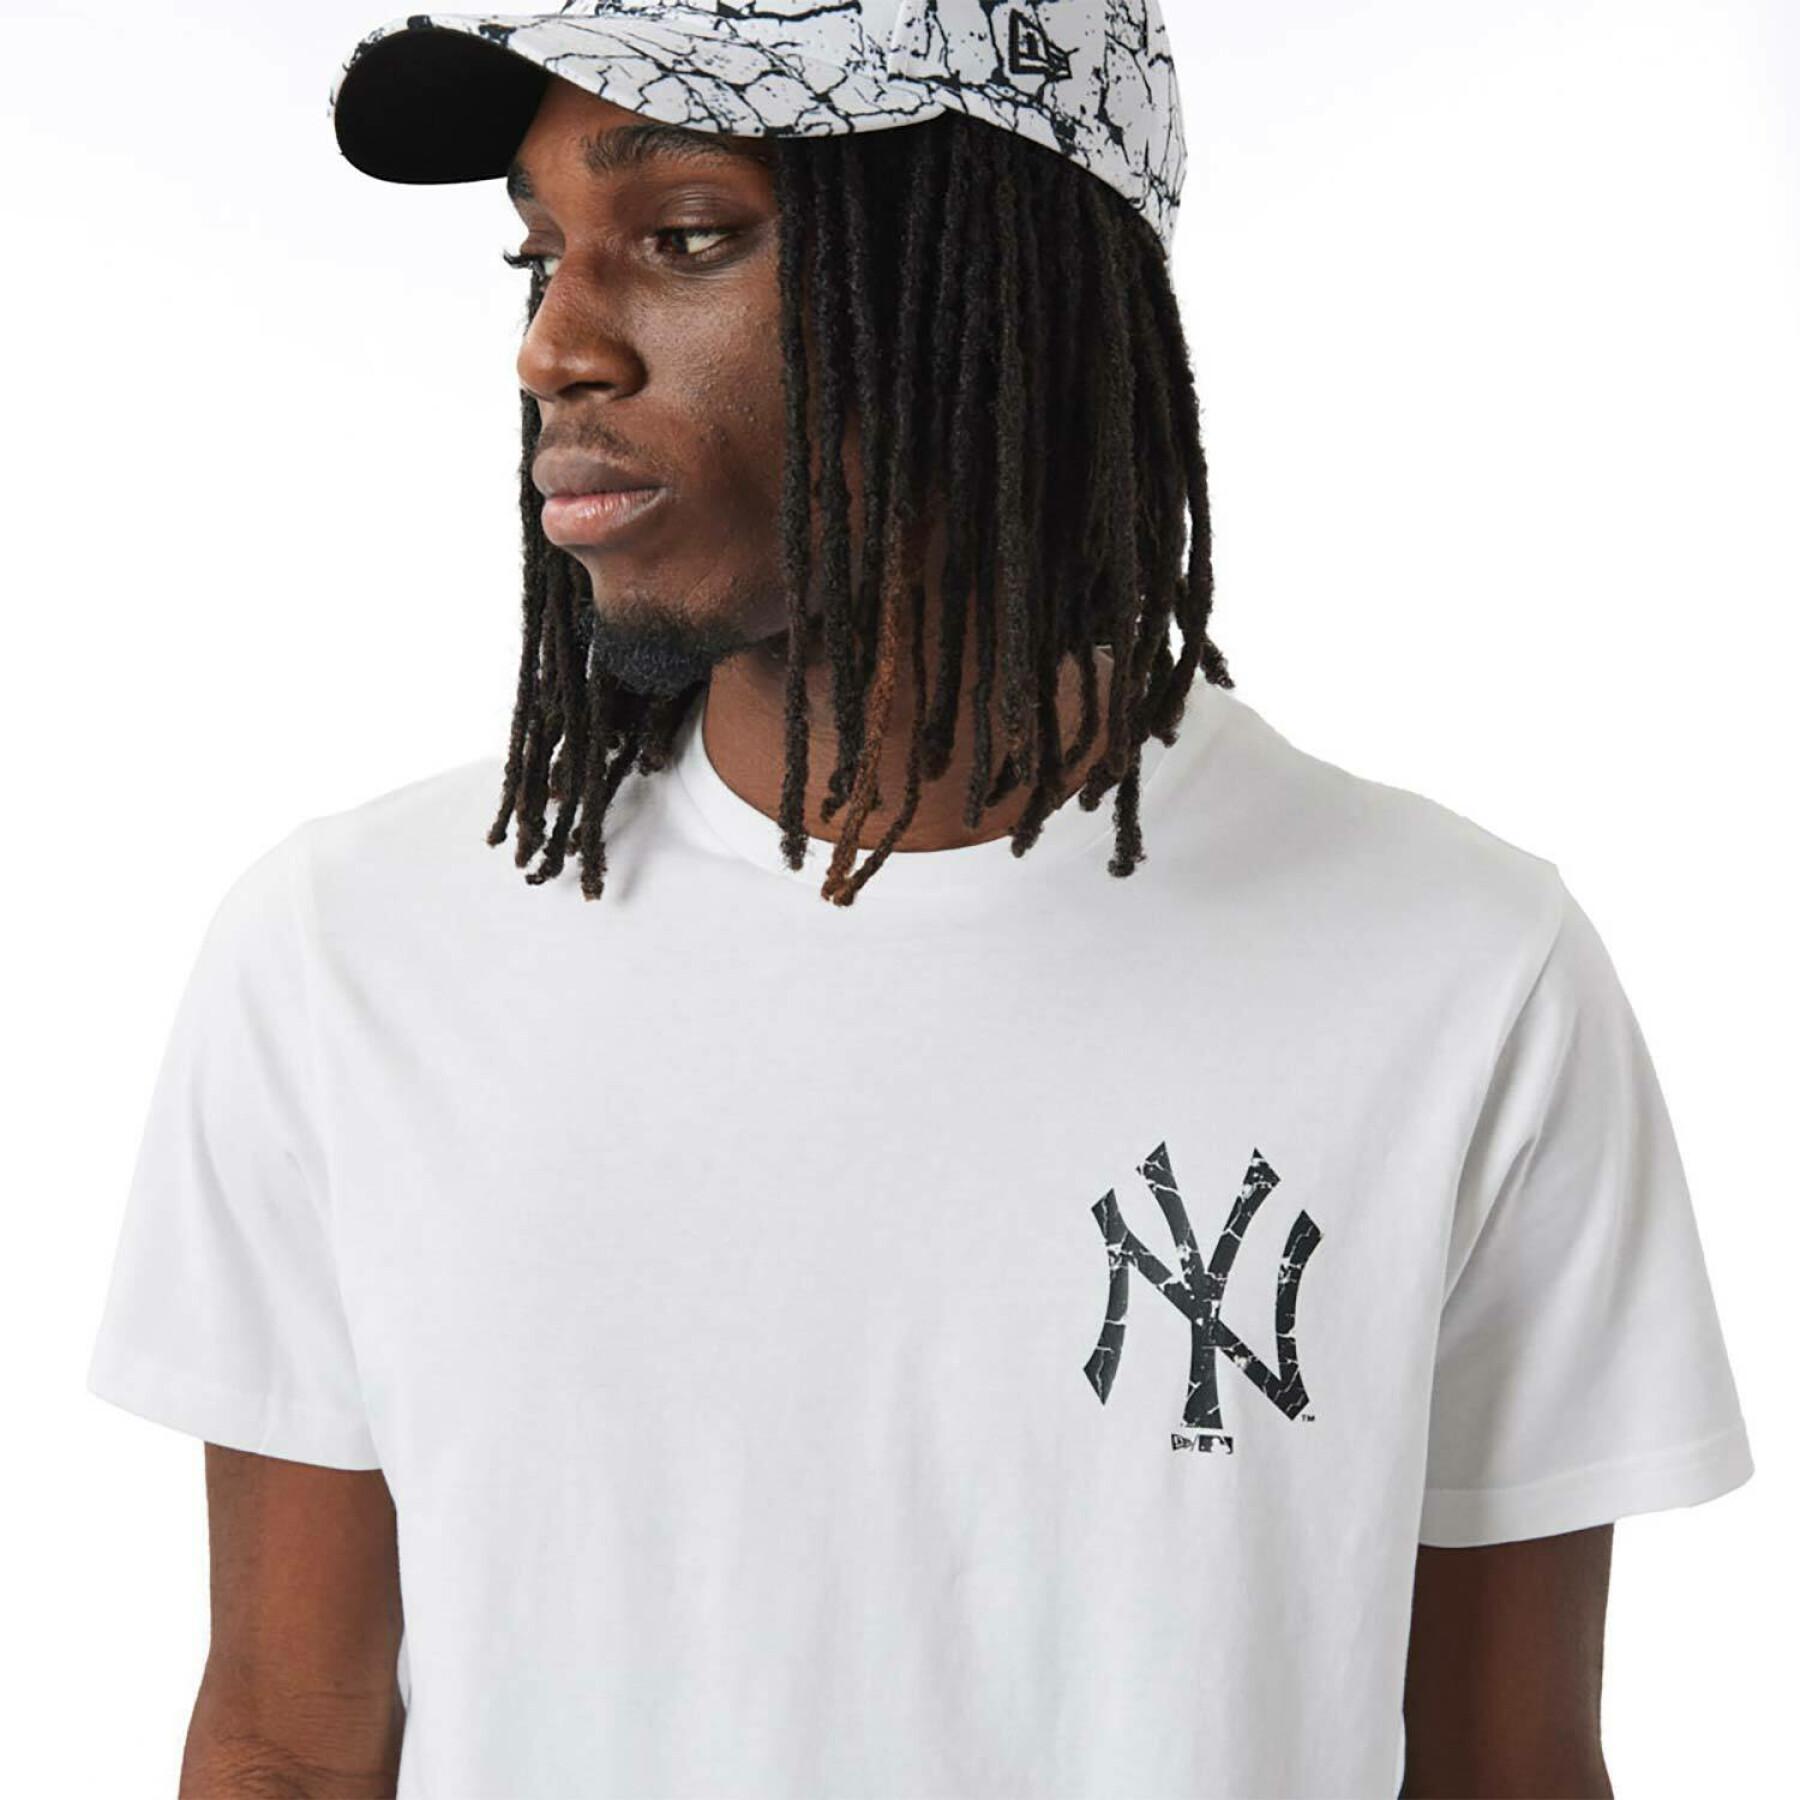 koszulka sezonowa mlb New York Yankees